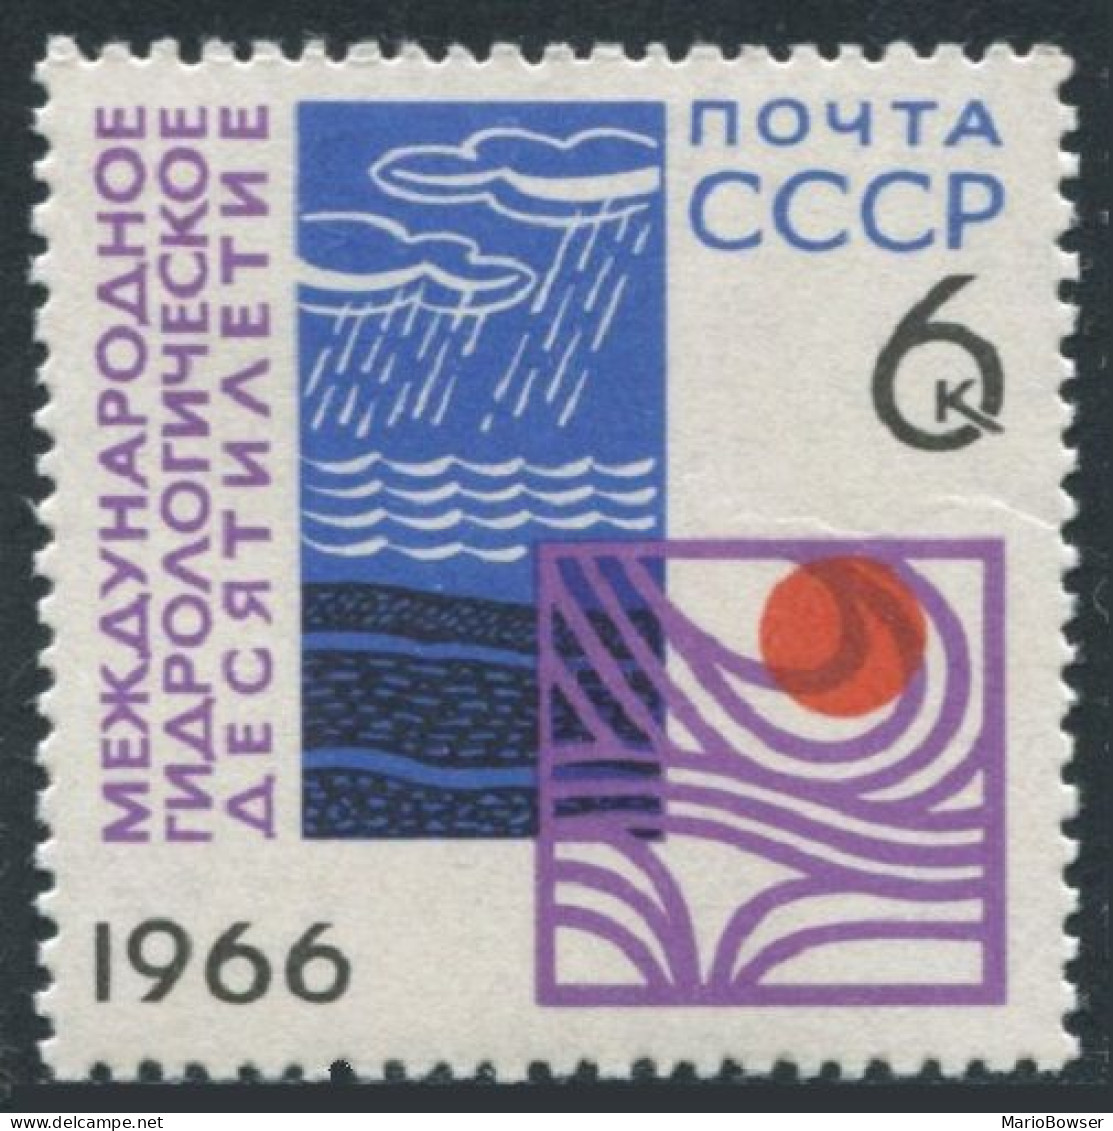 Russia 3251, MNH. Michel 3275. Hydrological Decade, UNESCO, 1966. - Nuovi